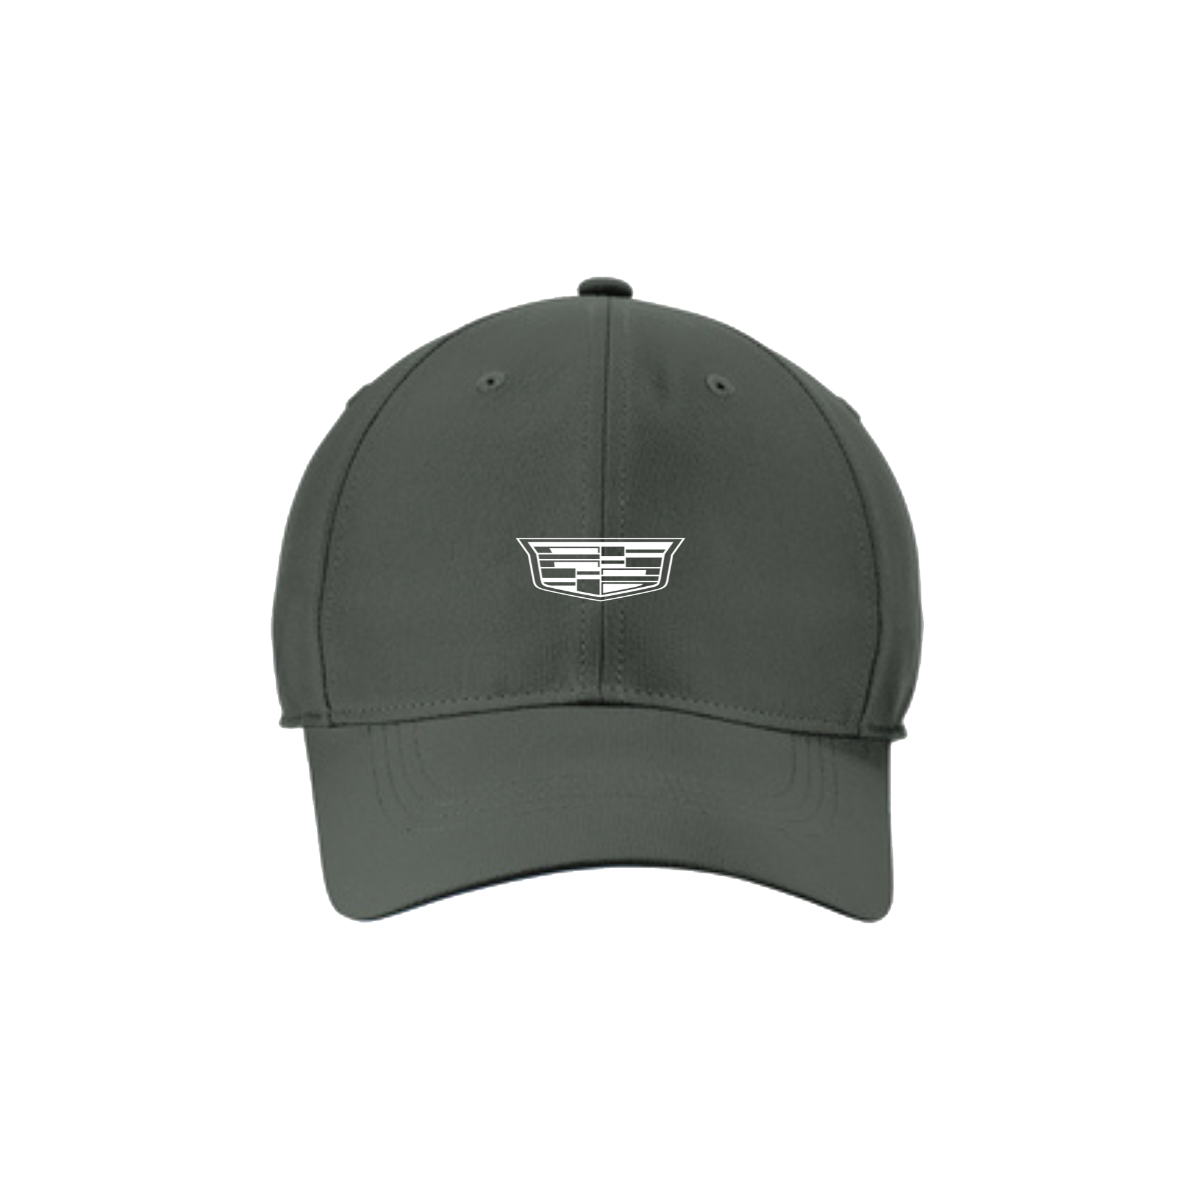 Cadillac Logo Nike Dri-Fit Tech Cap